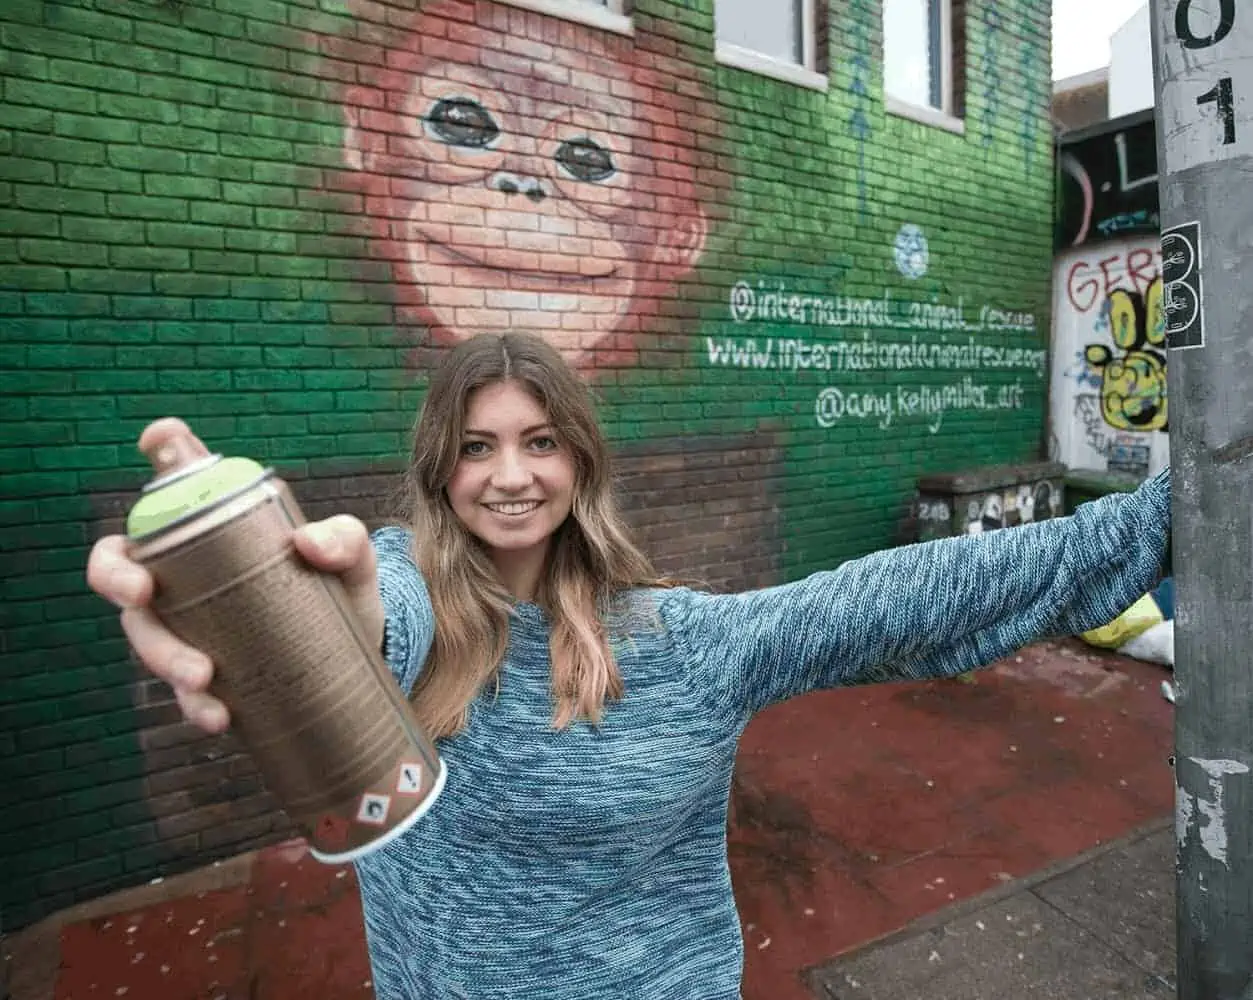 Street Art For Change Mural Orangutan Baby - Artist Blog - Zieler Art Supplies